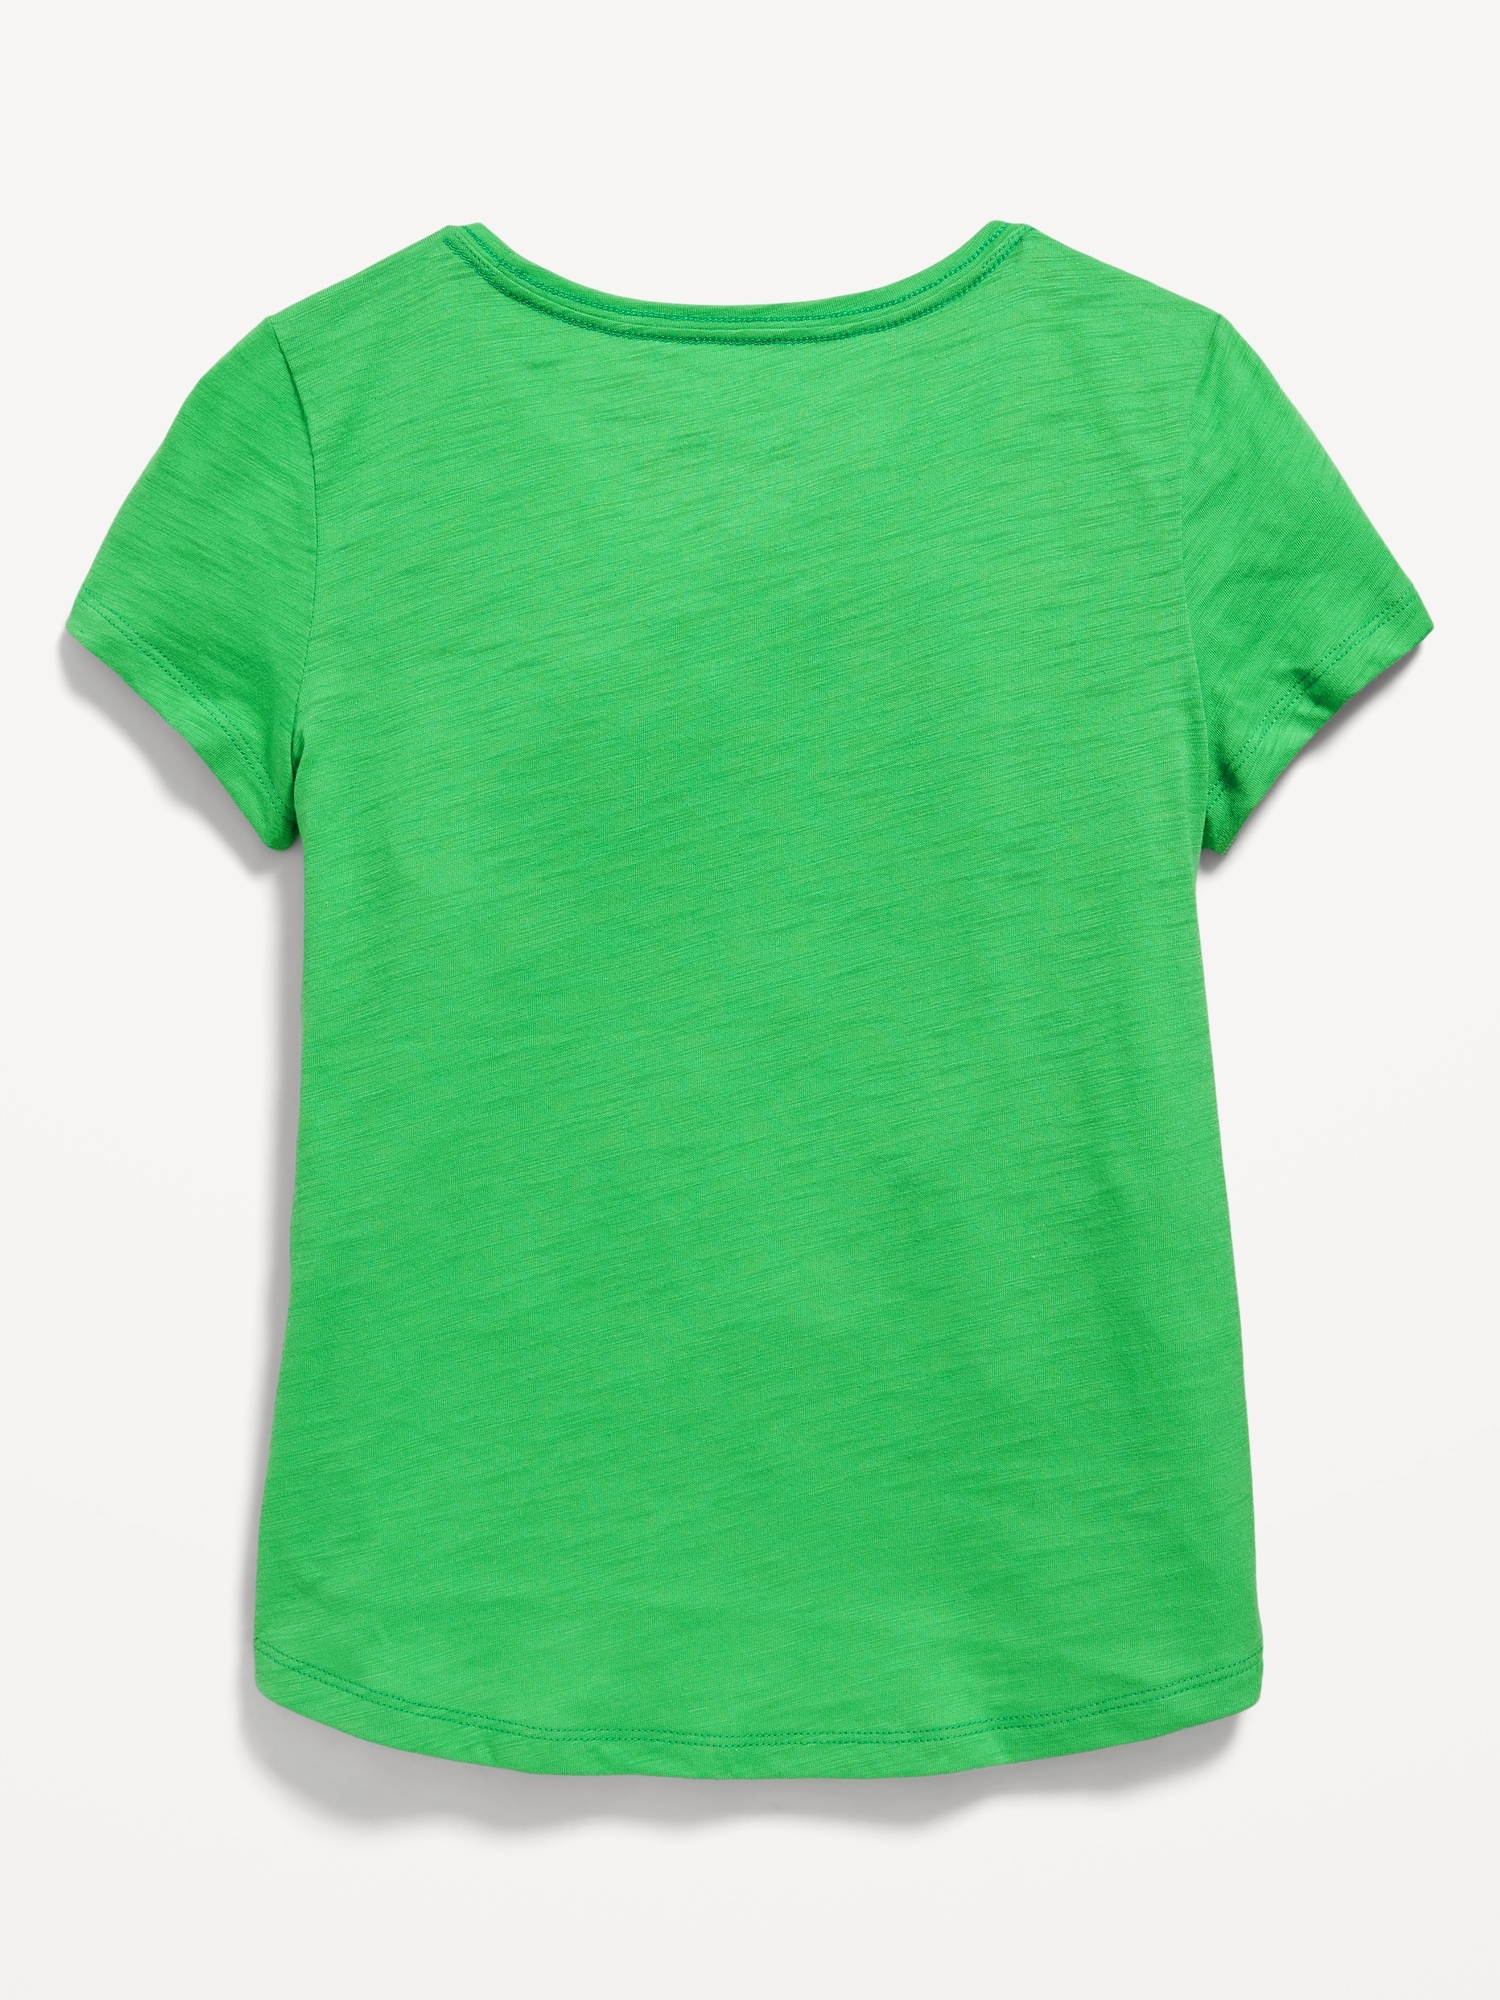 NEW NWT Girls 3M / 3 Months Olive Green Lightweight Shirt-Like